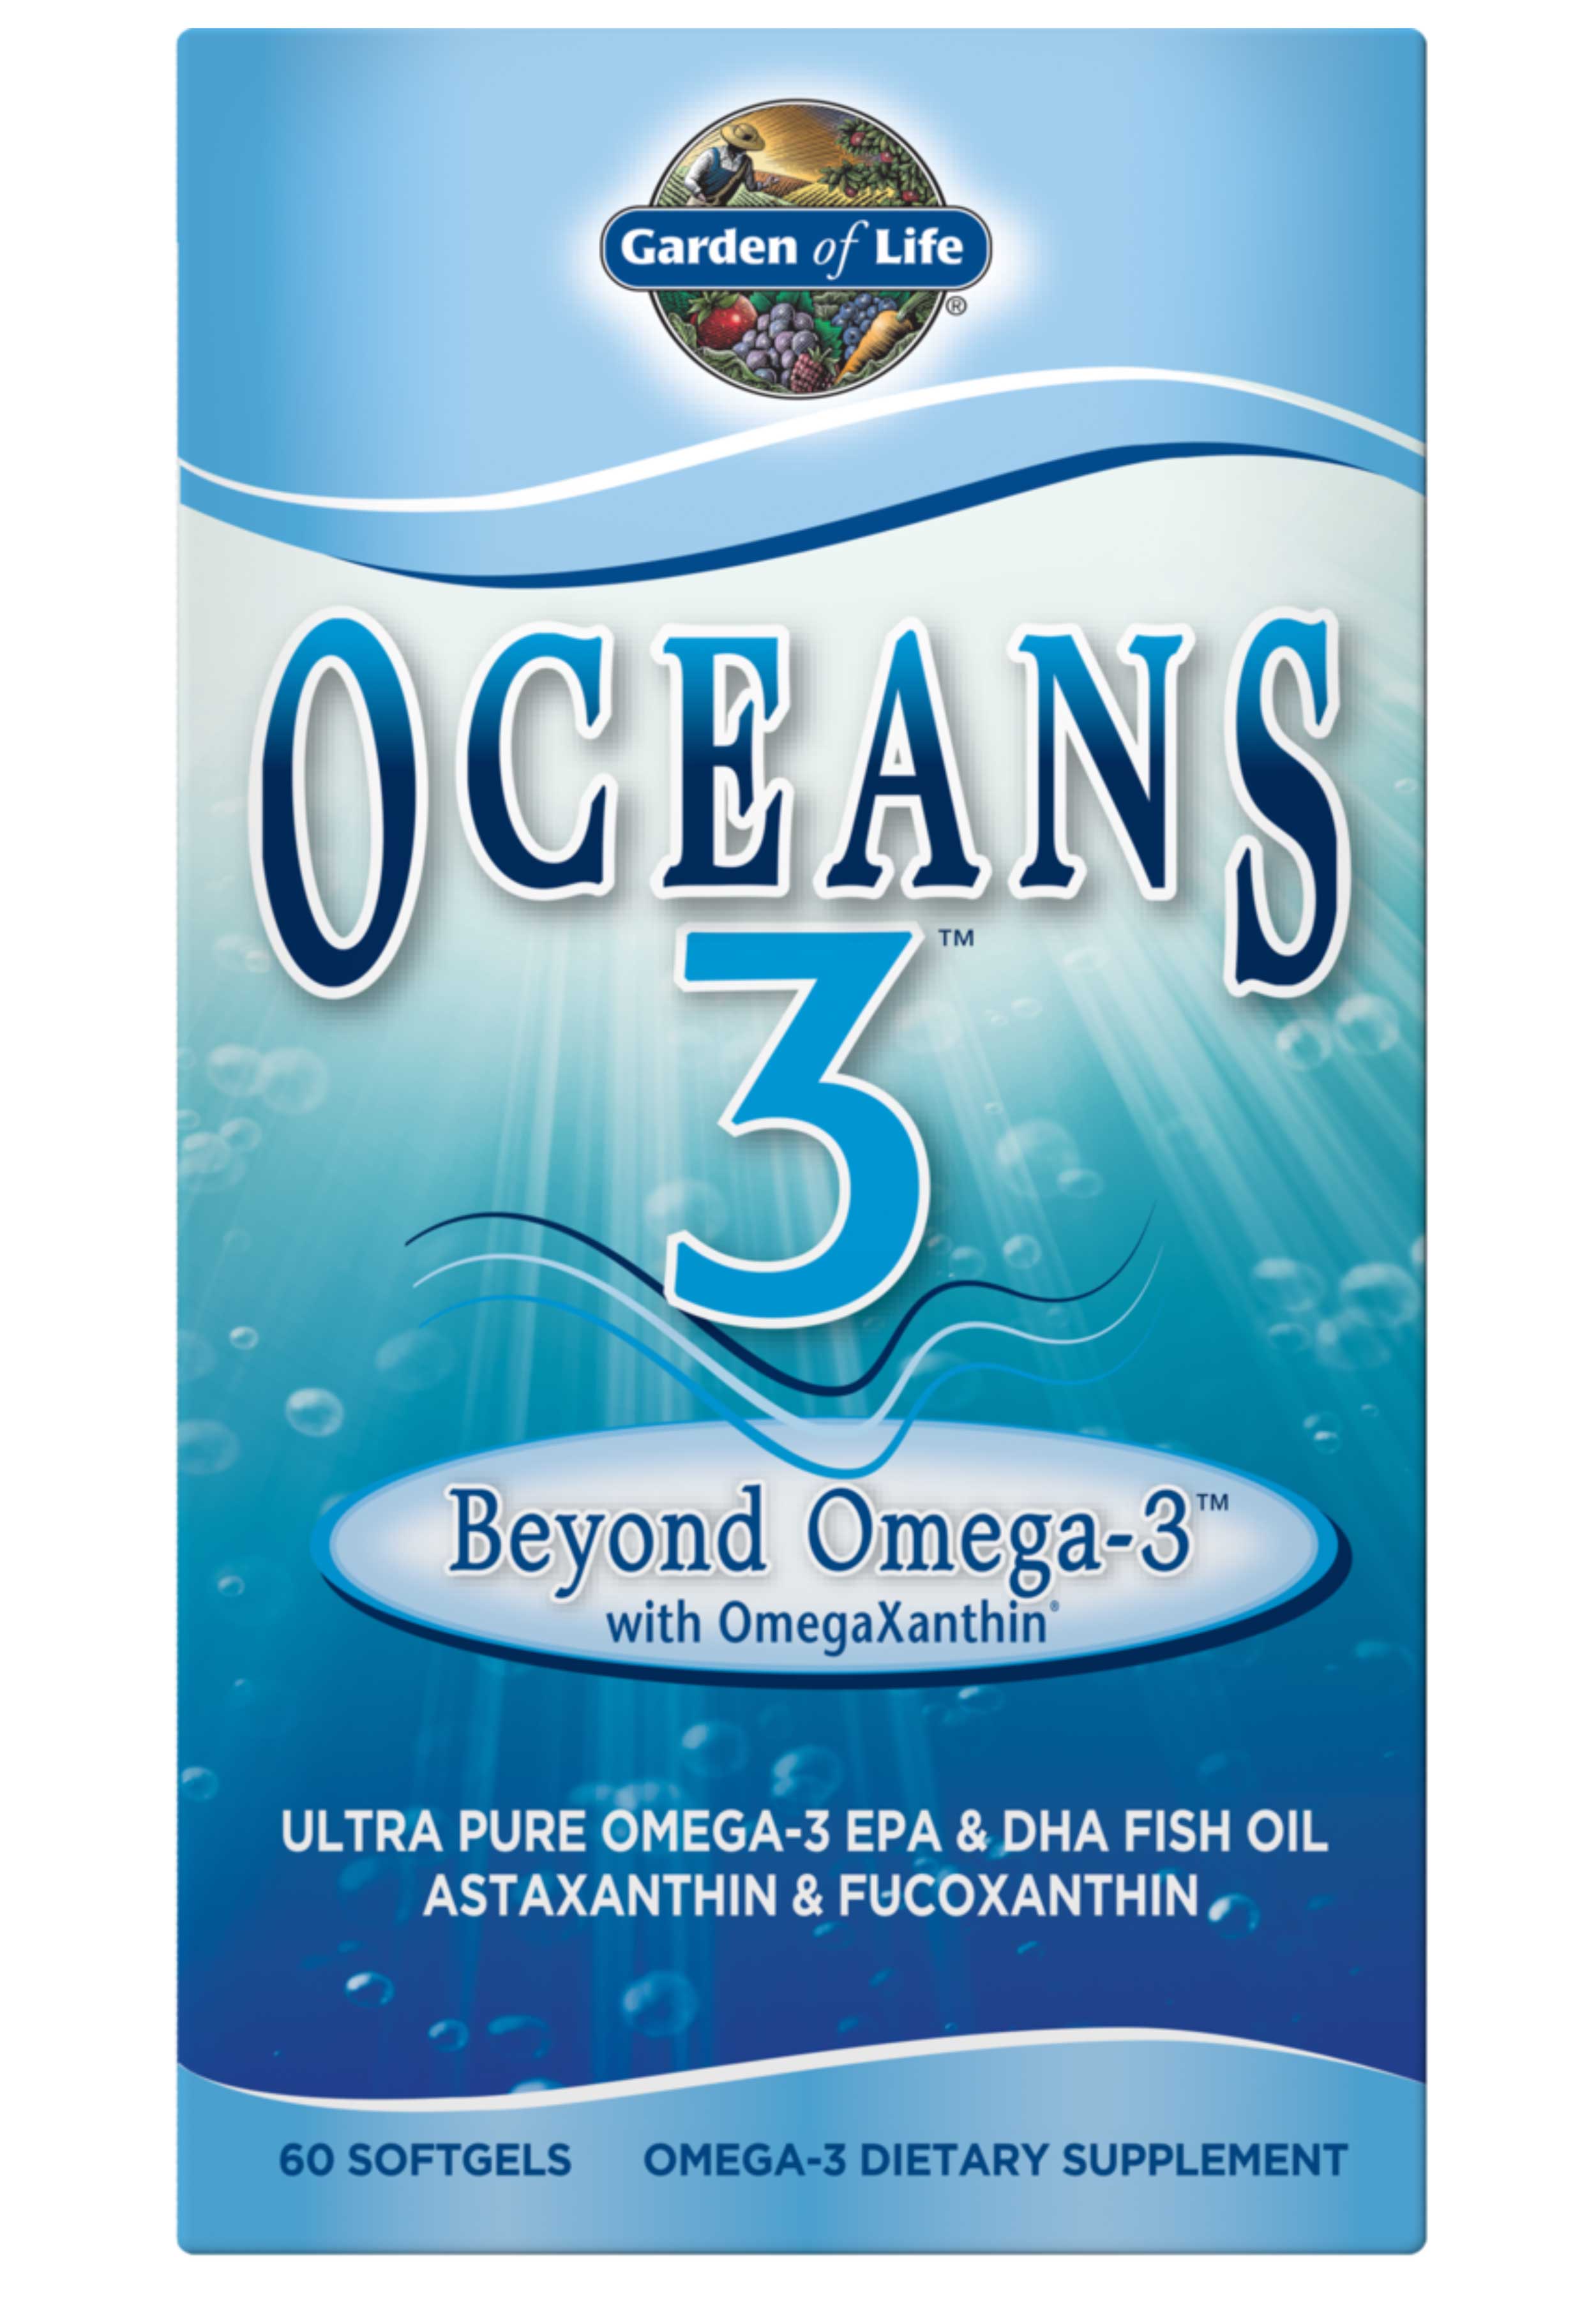 Garden of Life Oceans 3 Beyond Omega-3